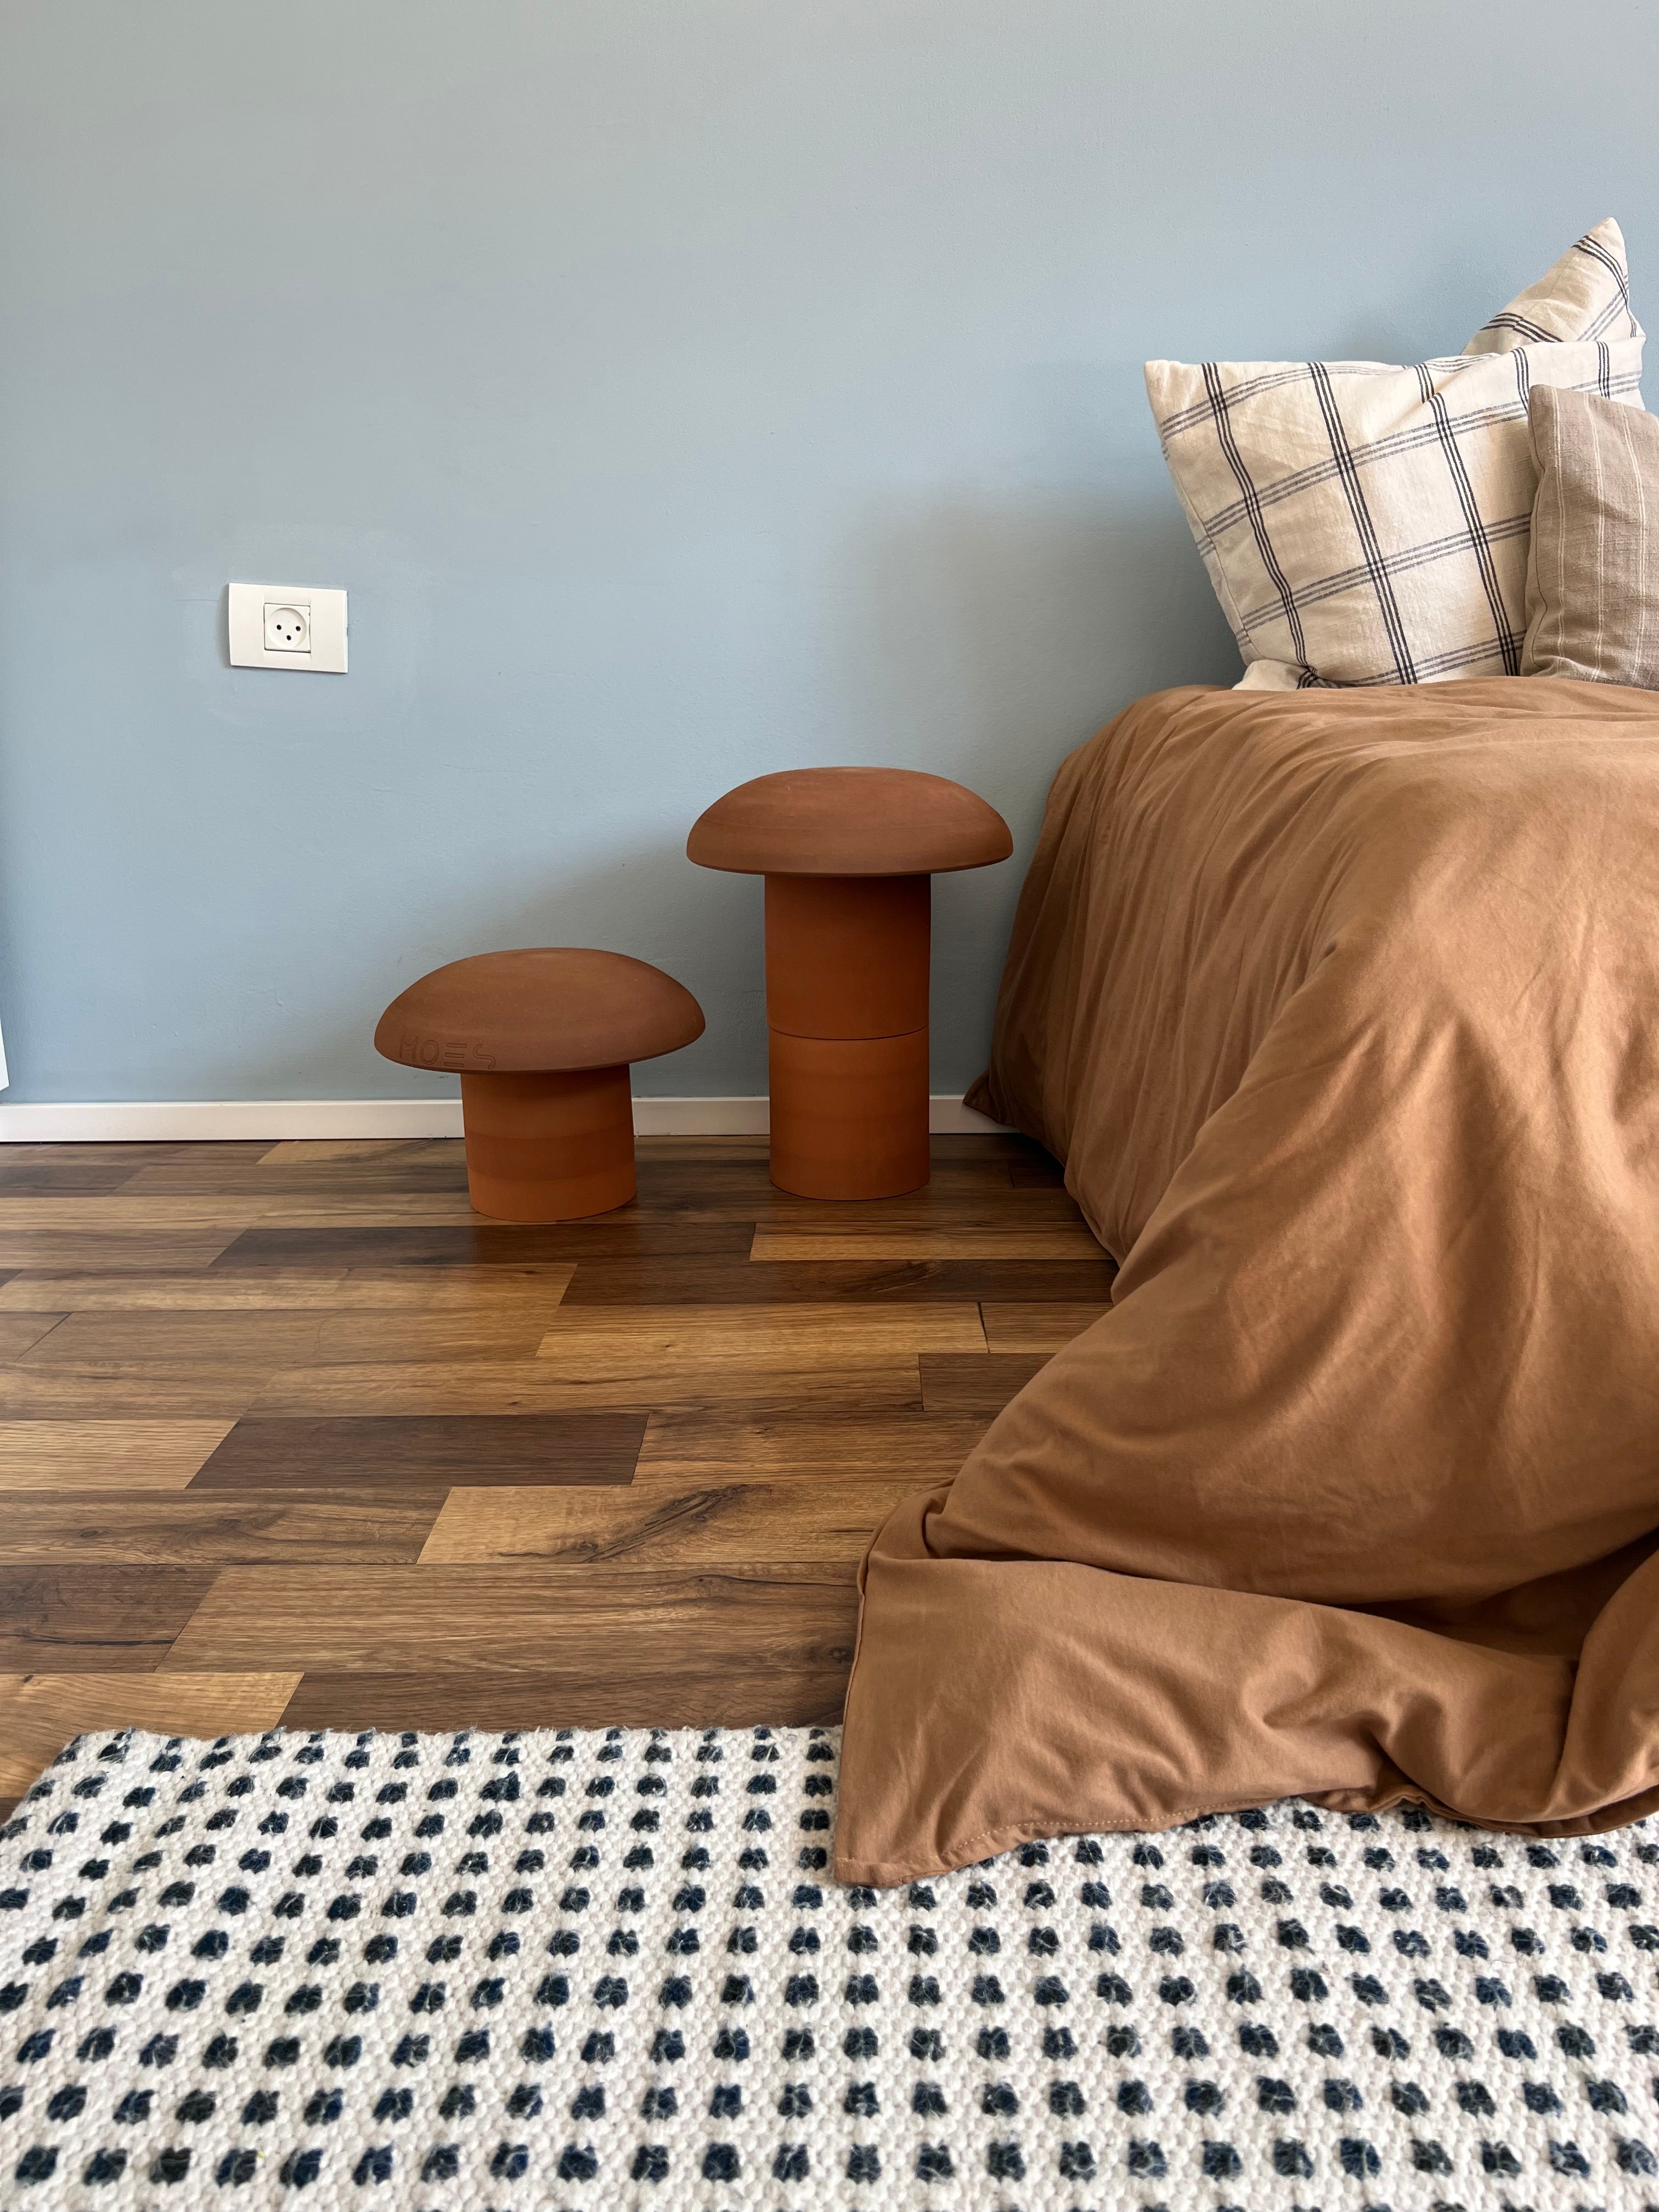 פטריות יער -  הבלוג של רומז - עיצוב נורדי מקסימליסטי לחדר שינה לילדים